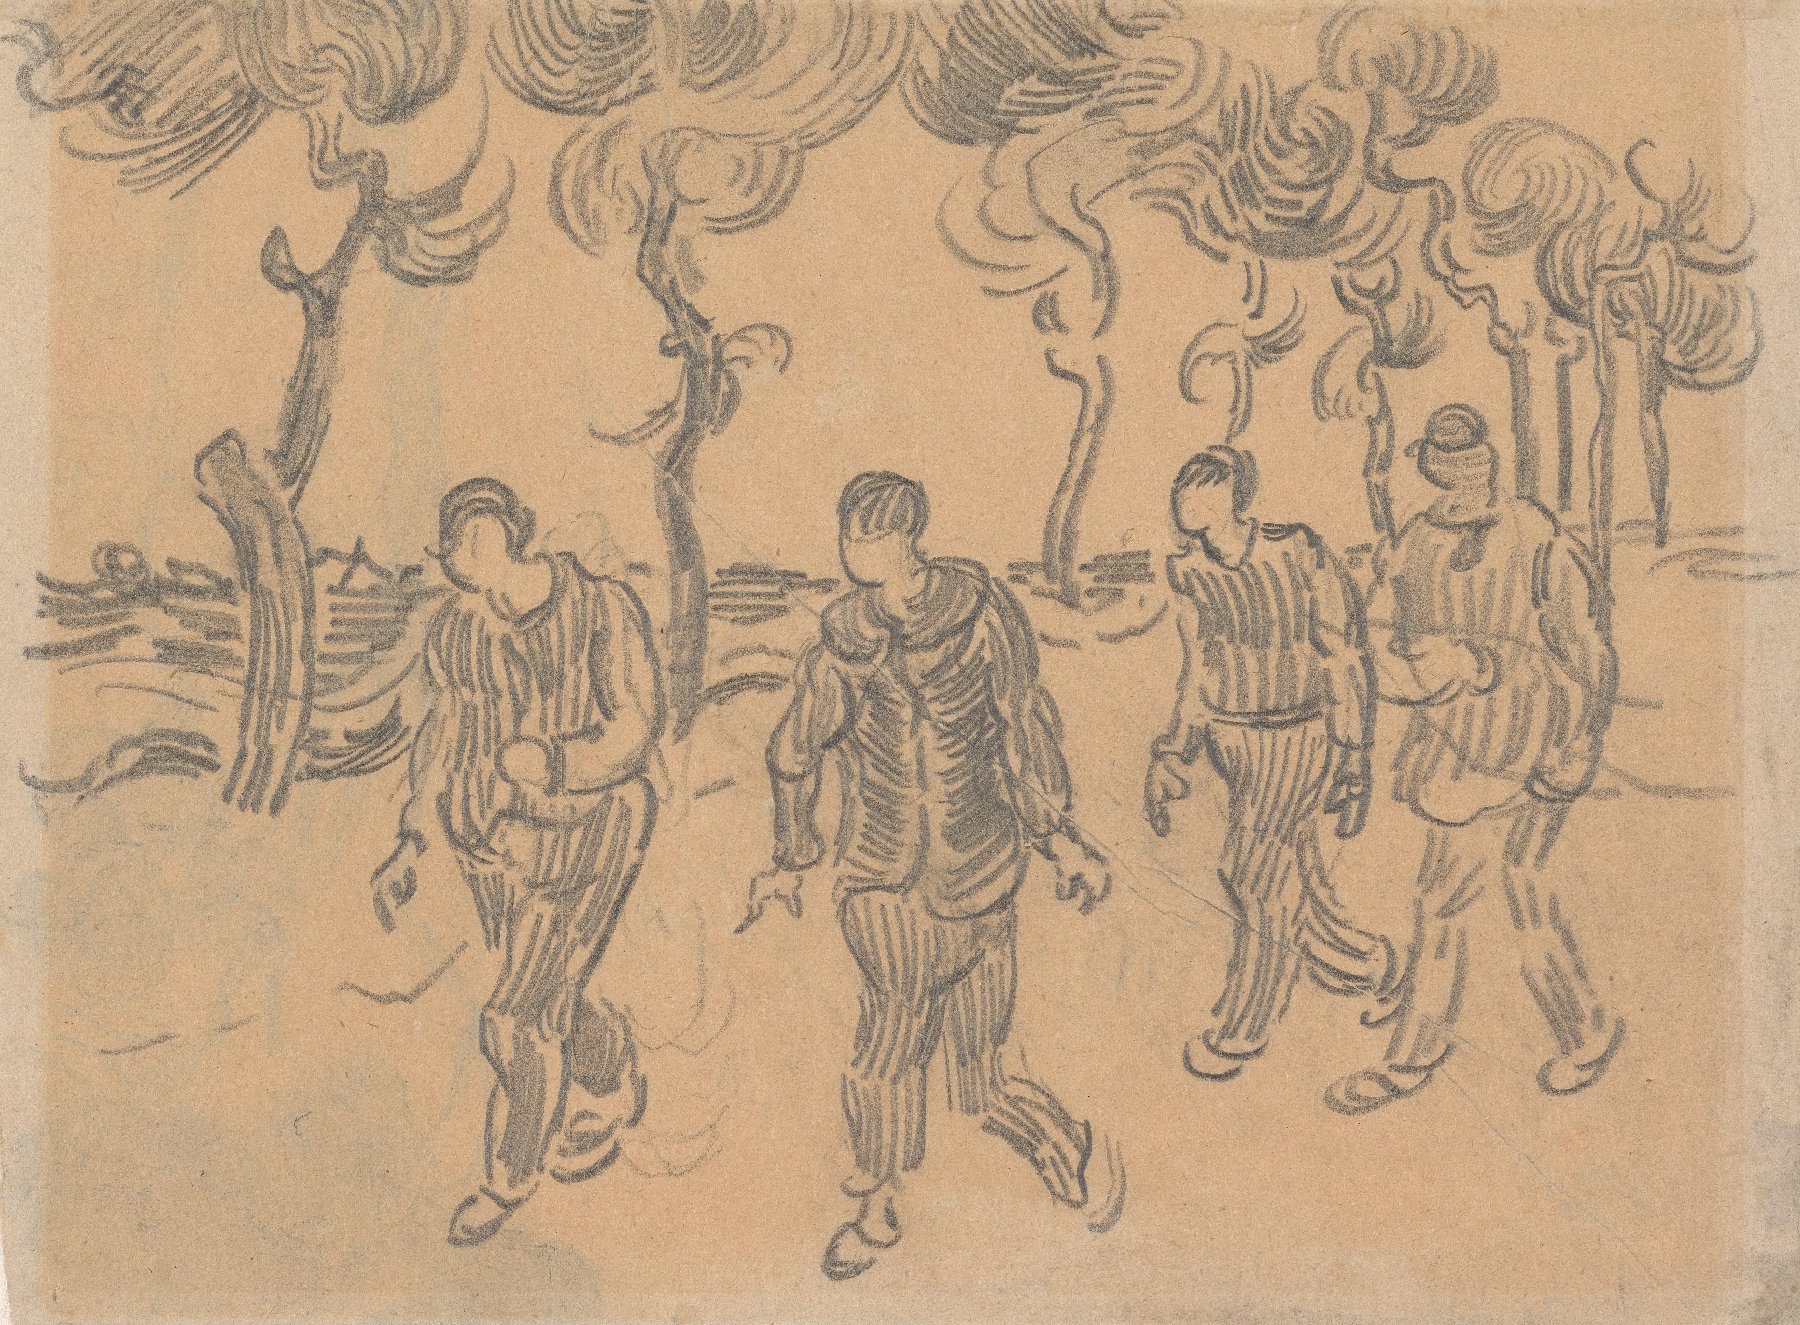 Vier mannen op een weg Vincent van Gogh (1853 - 1890), Saint-Rémy-de-Provence, maart-april 1890